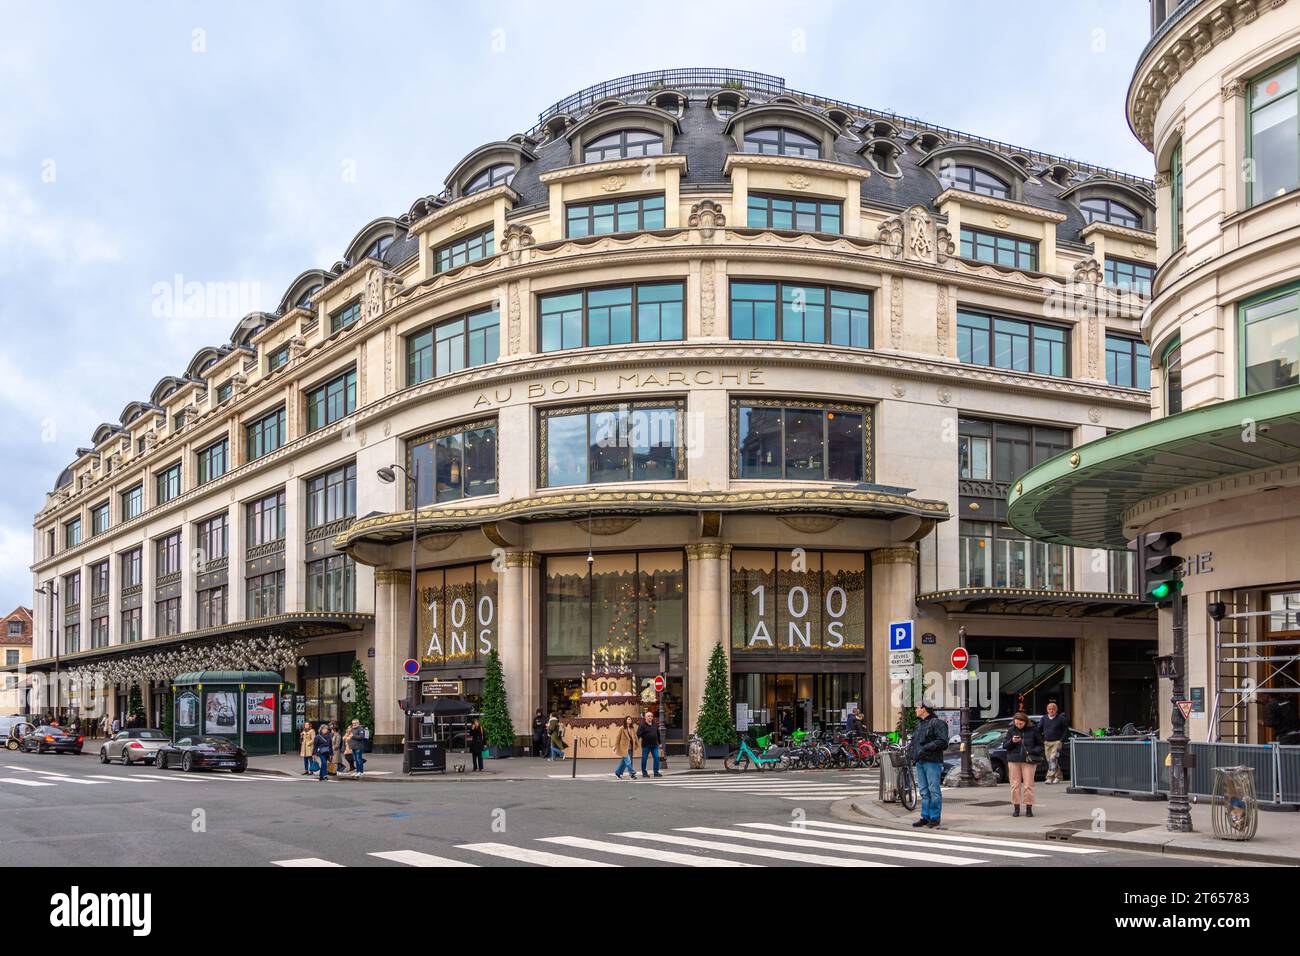 Vue extérieure du bon marché. Le bon marché, anciennement appelé « au bon marché », est un grand magasin français situé dans le 7e arrondissement de Paris Banque D'Images